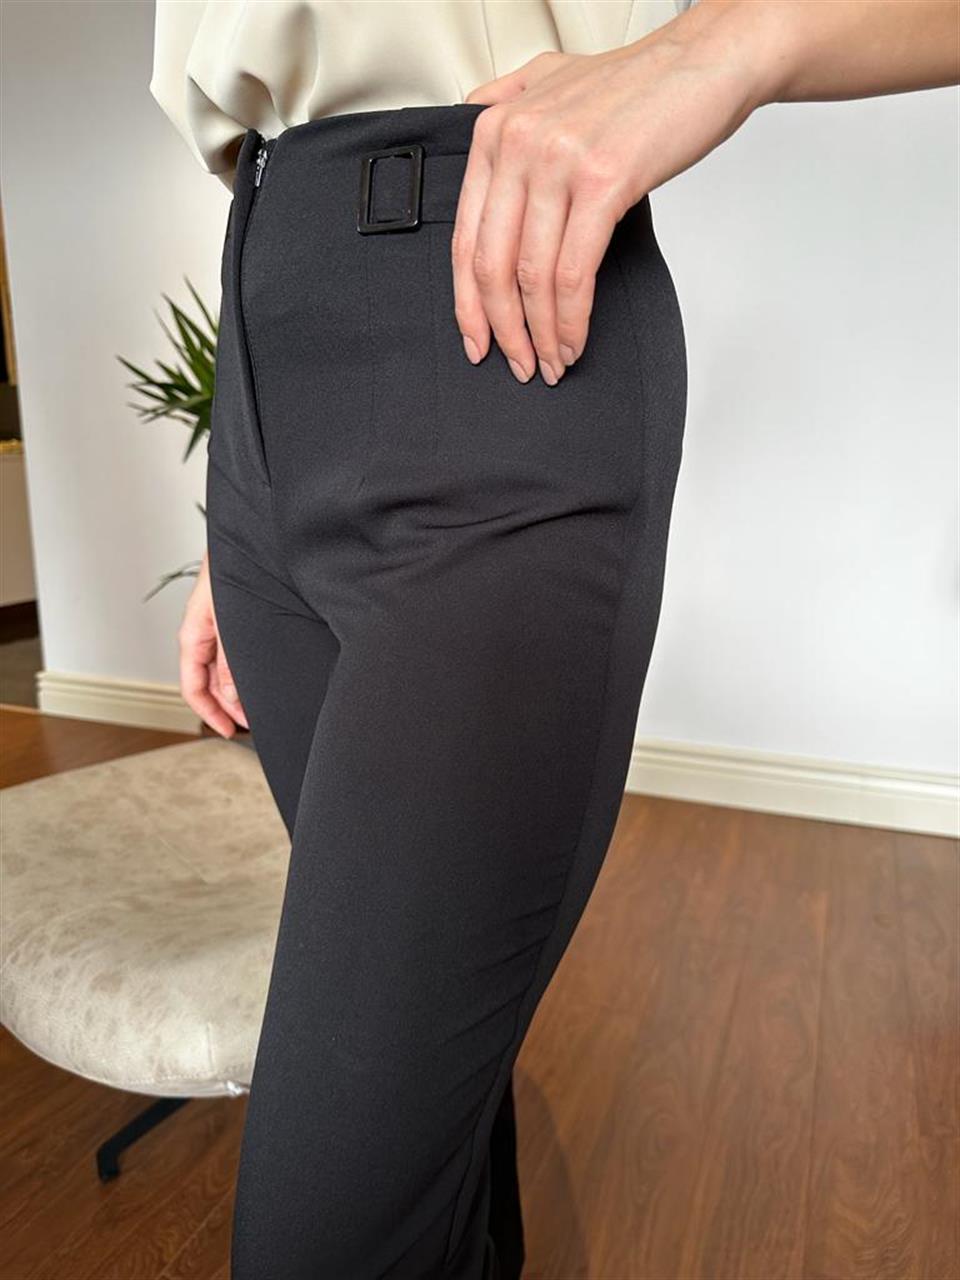 Z*ara Model Tokalı Siyah Likralı Pantolon